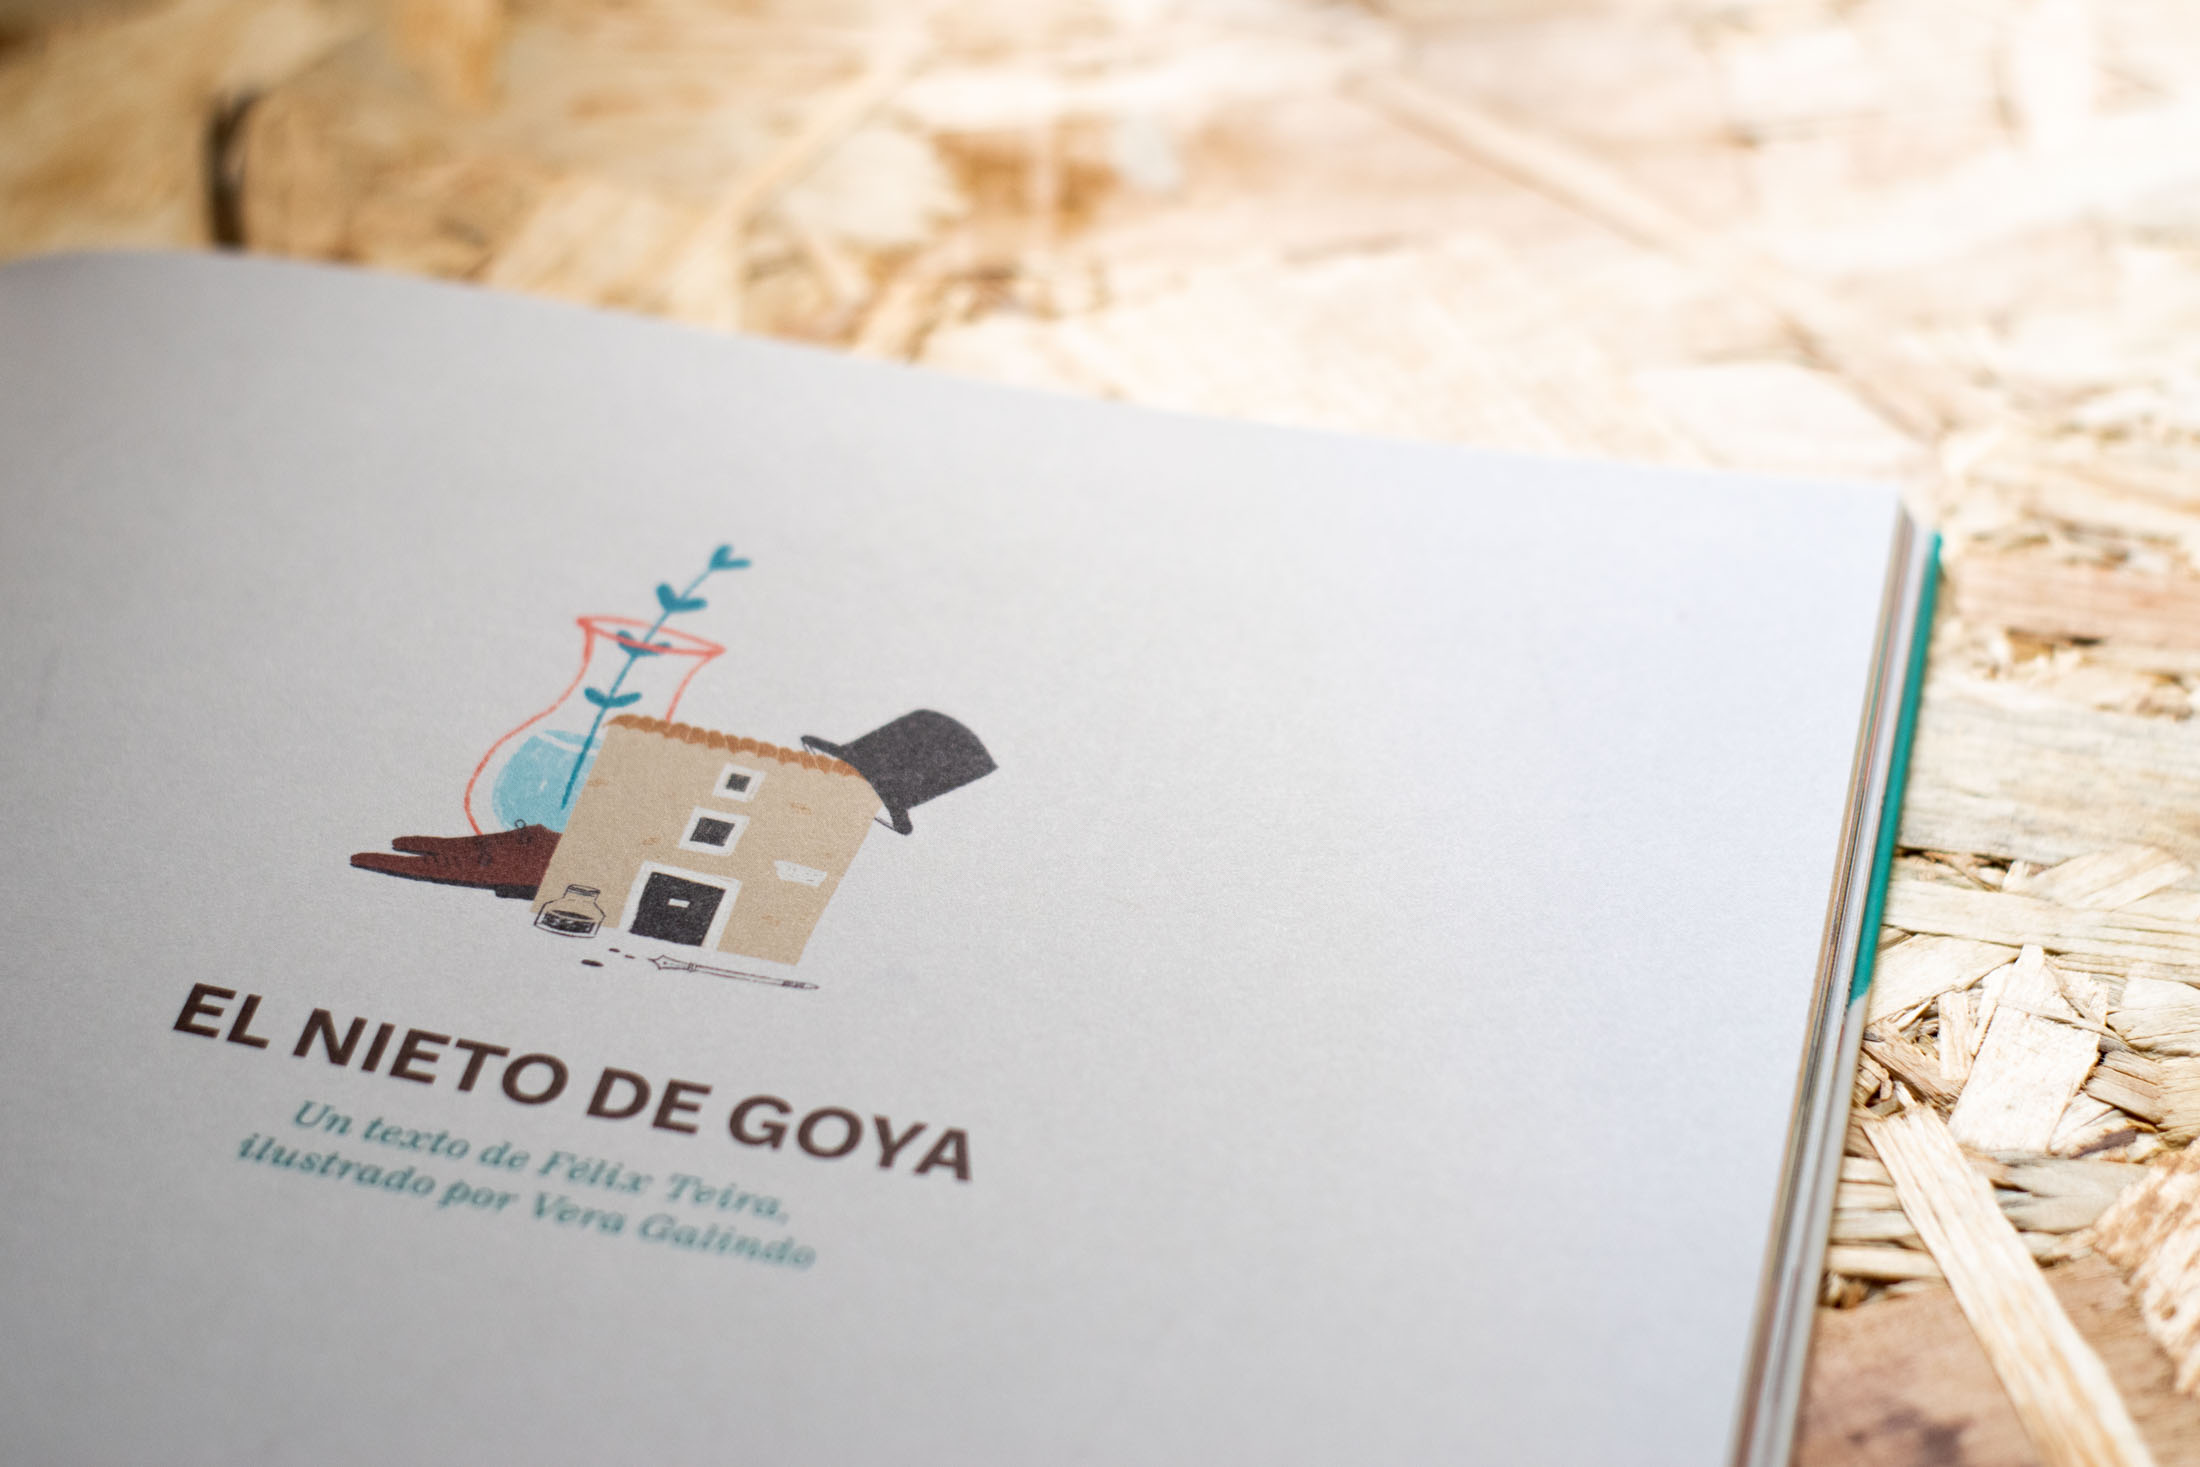 El Nieto de Goya · Félix Teira y Vera Galindo · Álbum ilustrado sobre Goya en su 275 aniversario editado por la Comarca Campo de Belchite